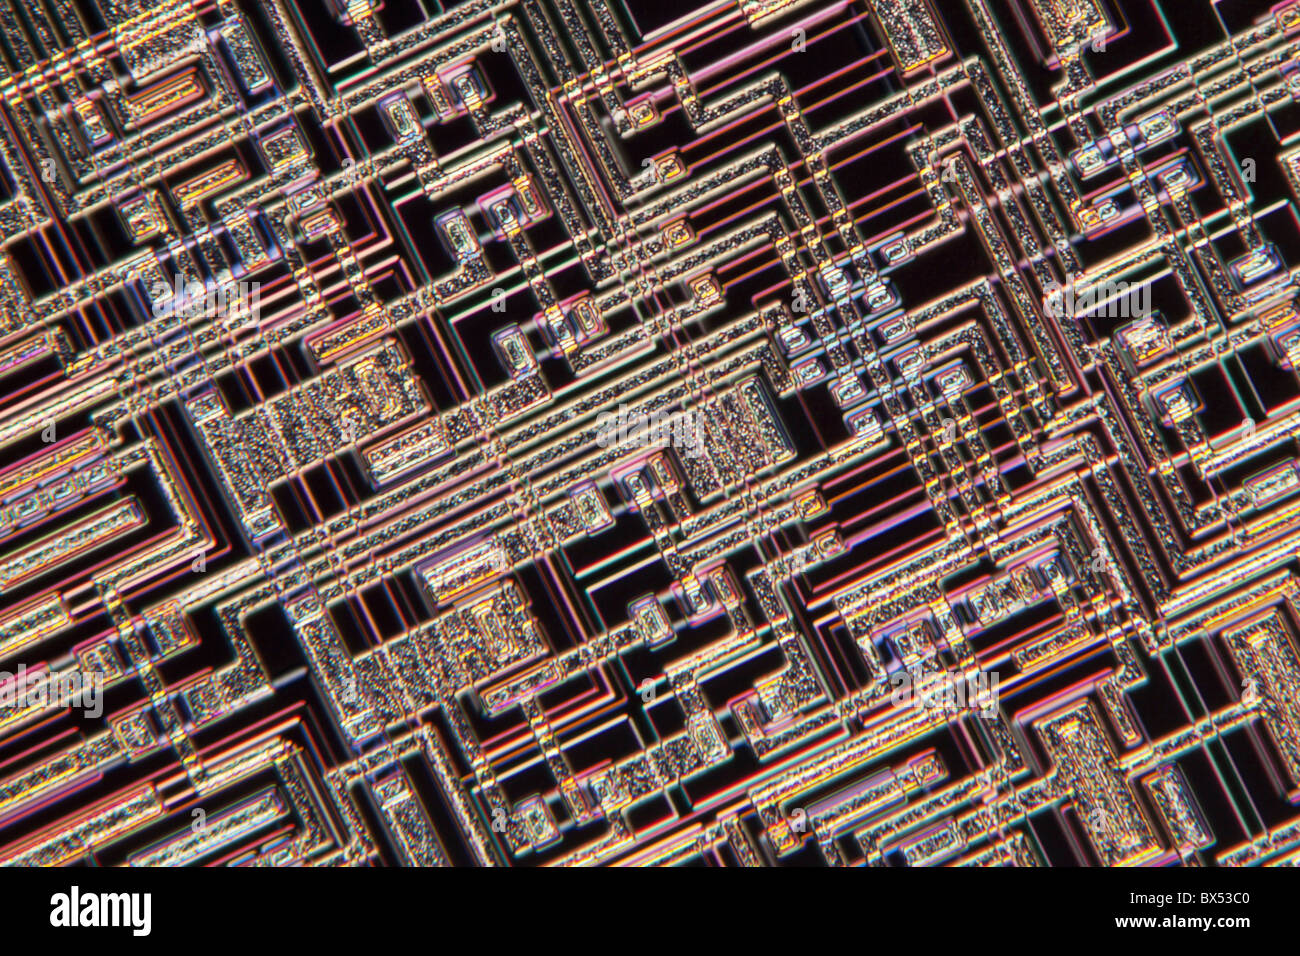 Microchip, microphotographie lumière Banque D'Images